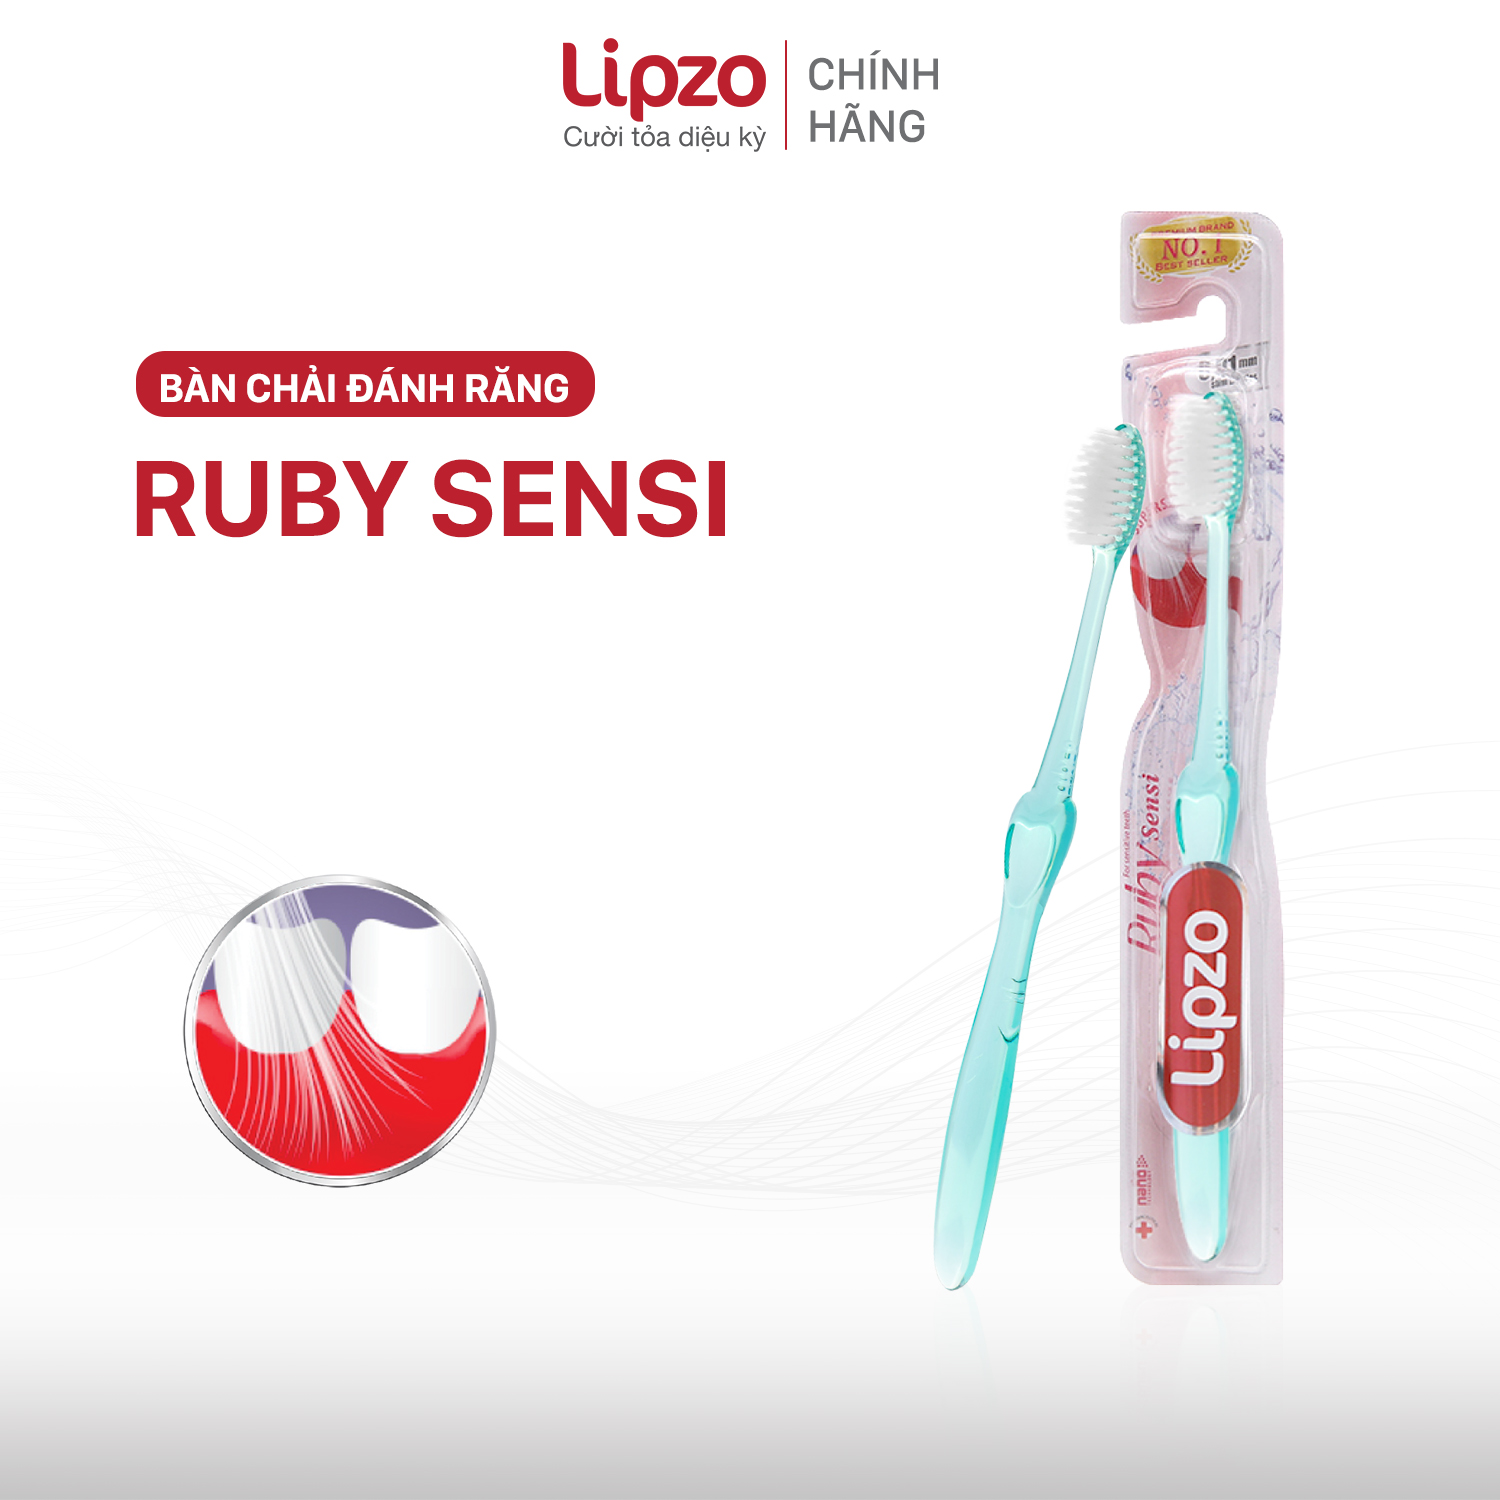 Hình ảnh Bàn Chải Đánh Răng LIPZO Ruby Sensi Công Nghệ Lông Chỉ Tơ Nha Khoa Phù Hợp Phụ Nữ Men Răng Yếu, Nhạy Cảm